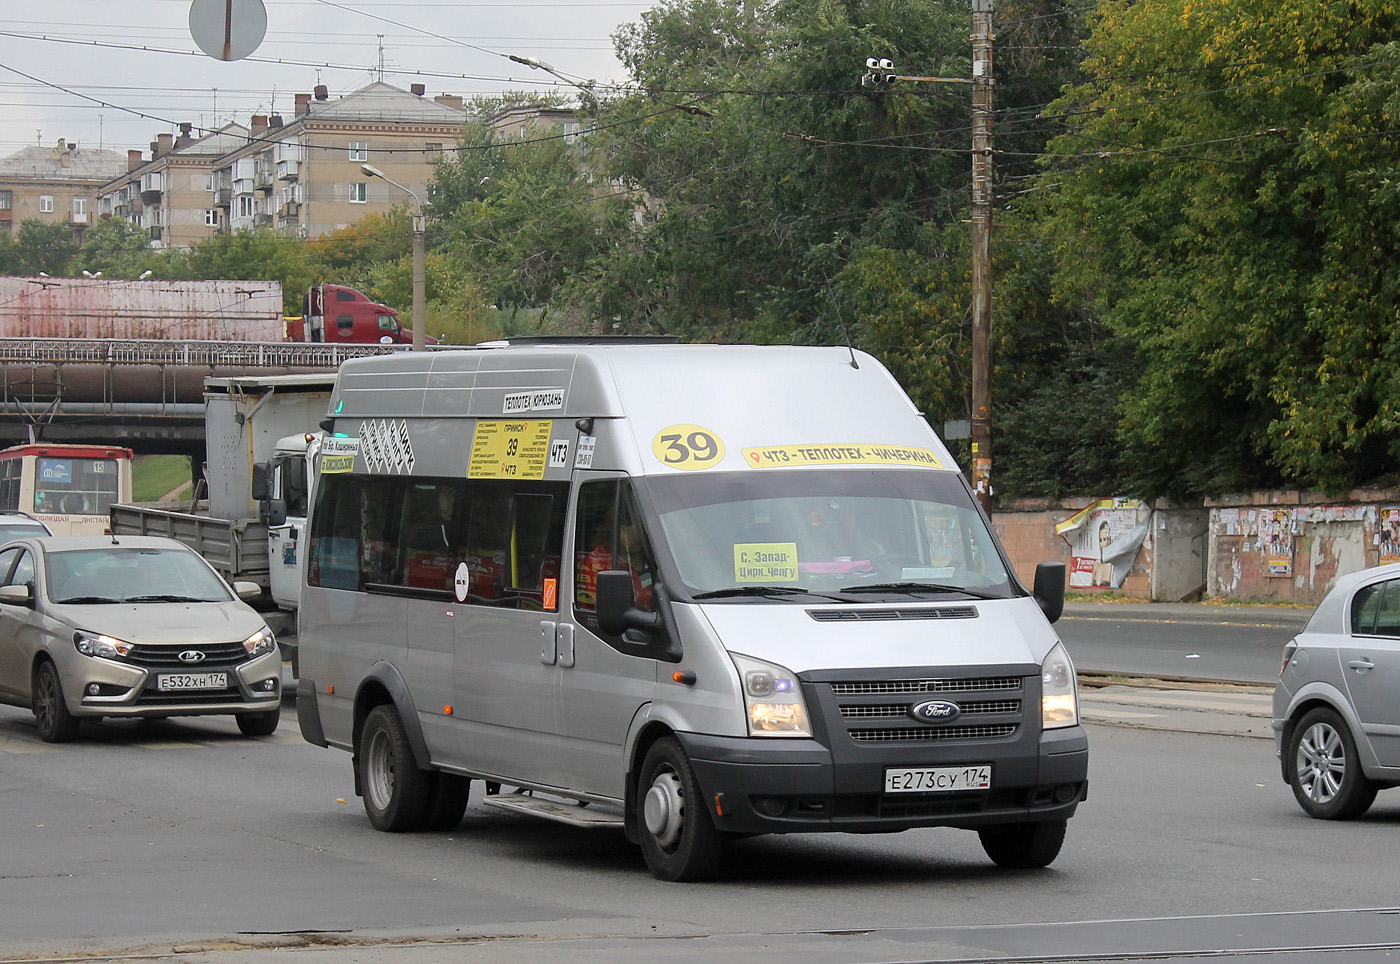 Челябинская область, Нижегородец-222702 (Ford Transit) № Е 273 СУ 174